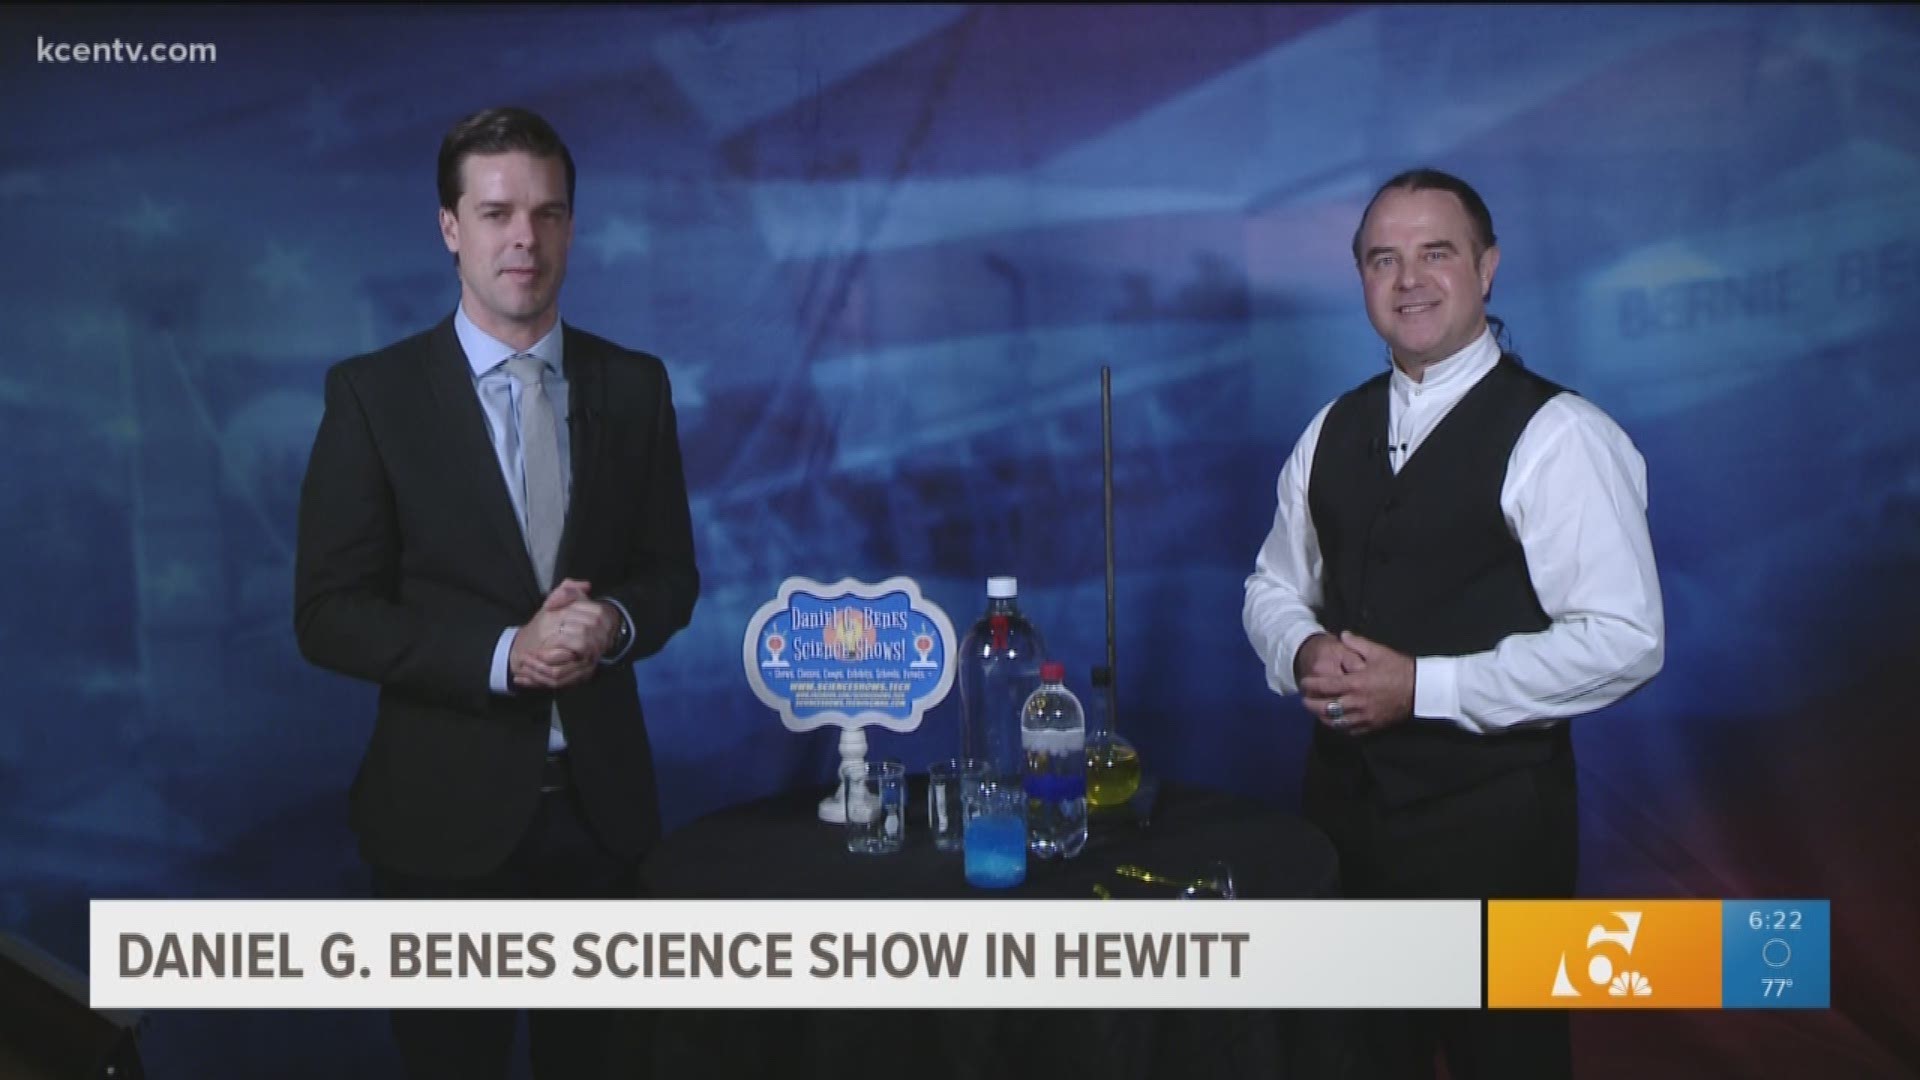 Daniel G. Benes science show